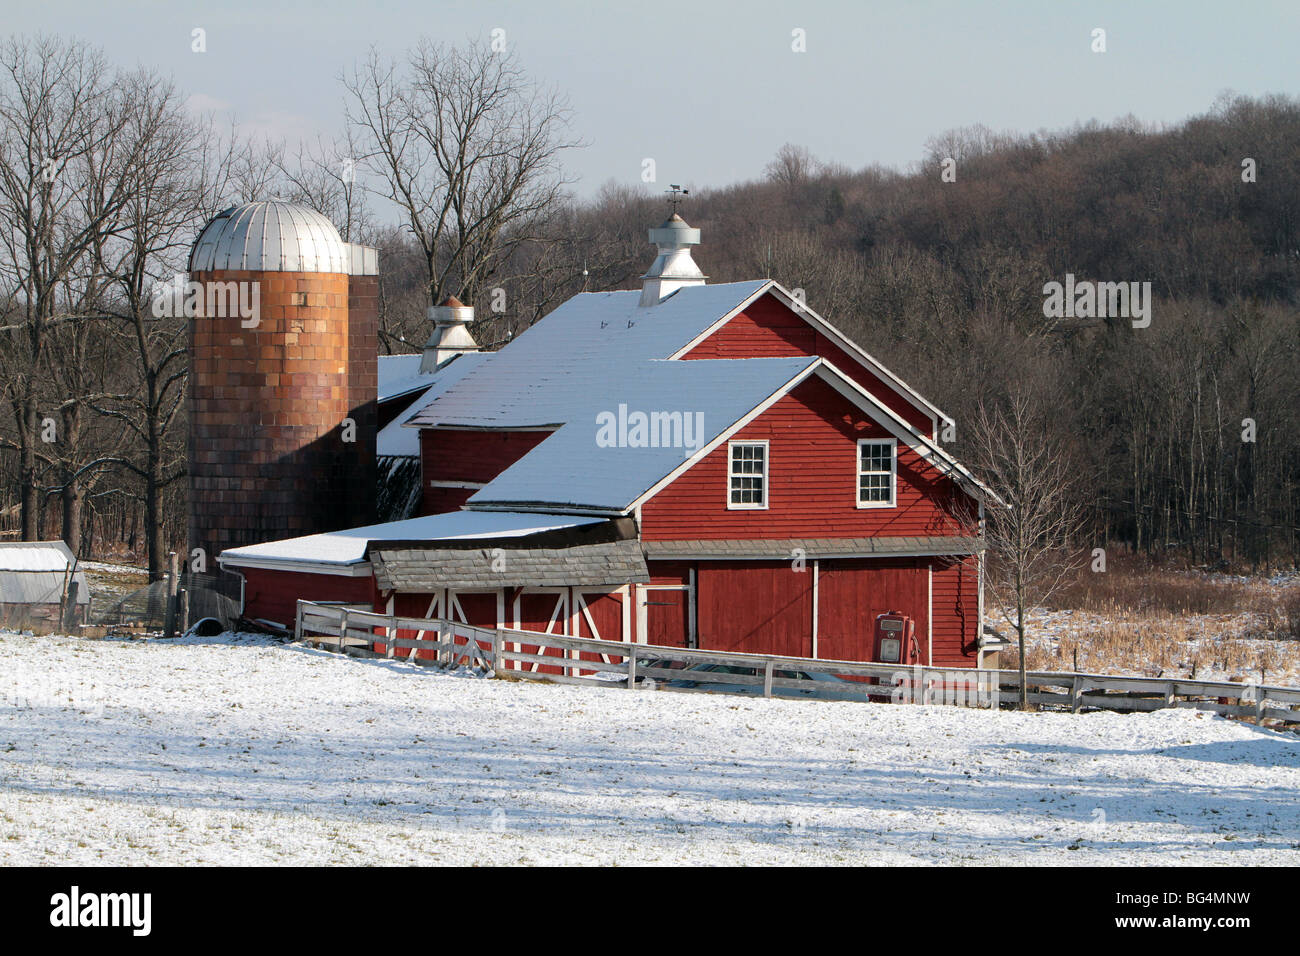 Eine rote Bauernhof Scheune mit einem Silo erschossen an einem Wintertag. Schnee hat die Feld und das Dach der Scheune bedeckt. Stockfoto